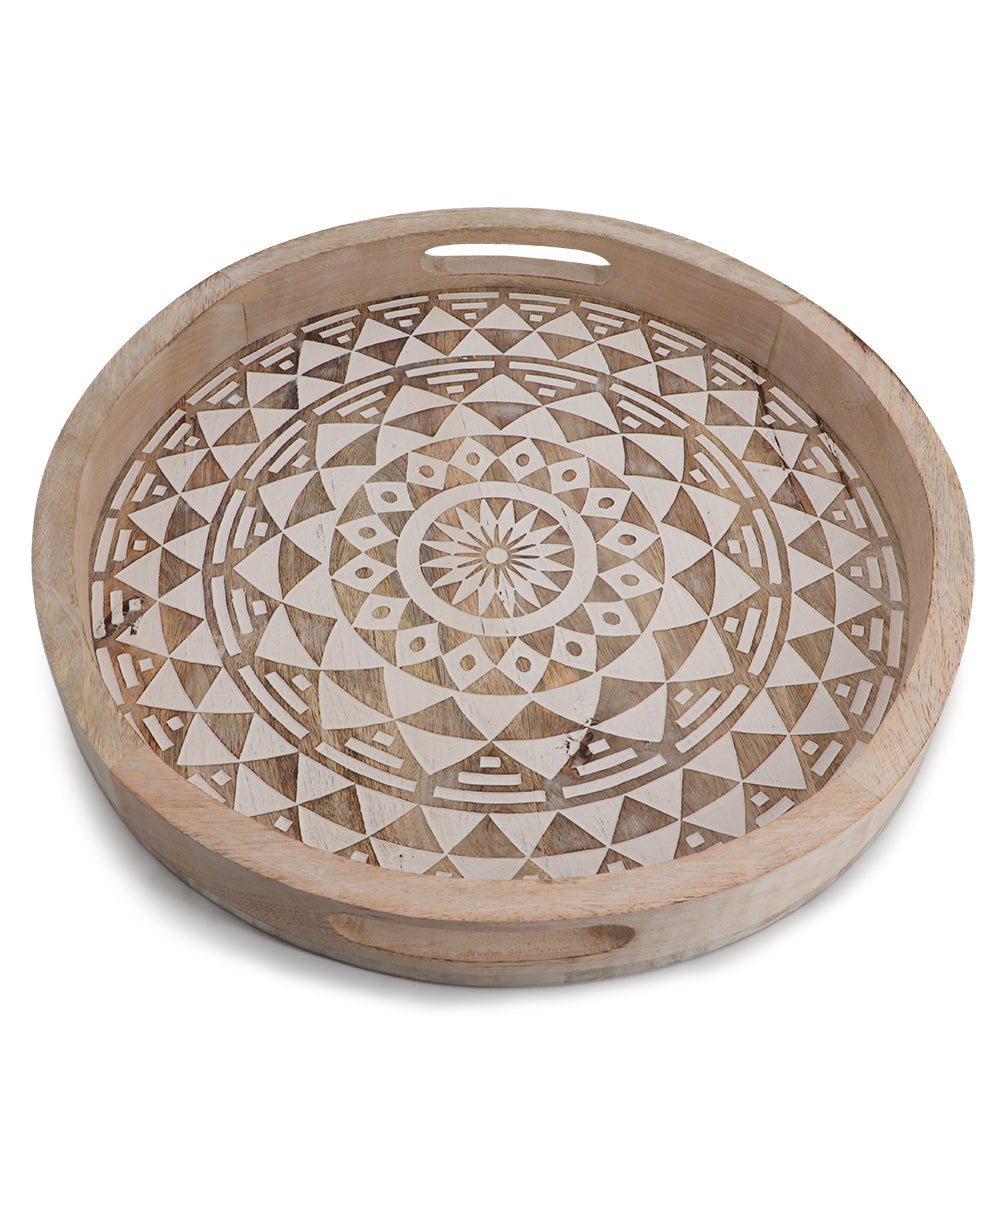 Handmade Wood Mandala Design Tray - Decorative Trays Large